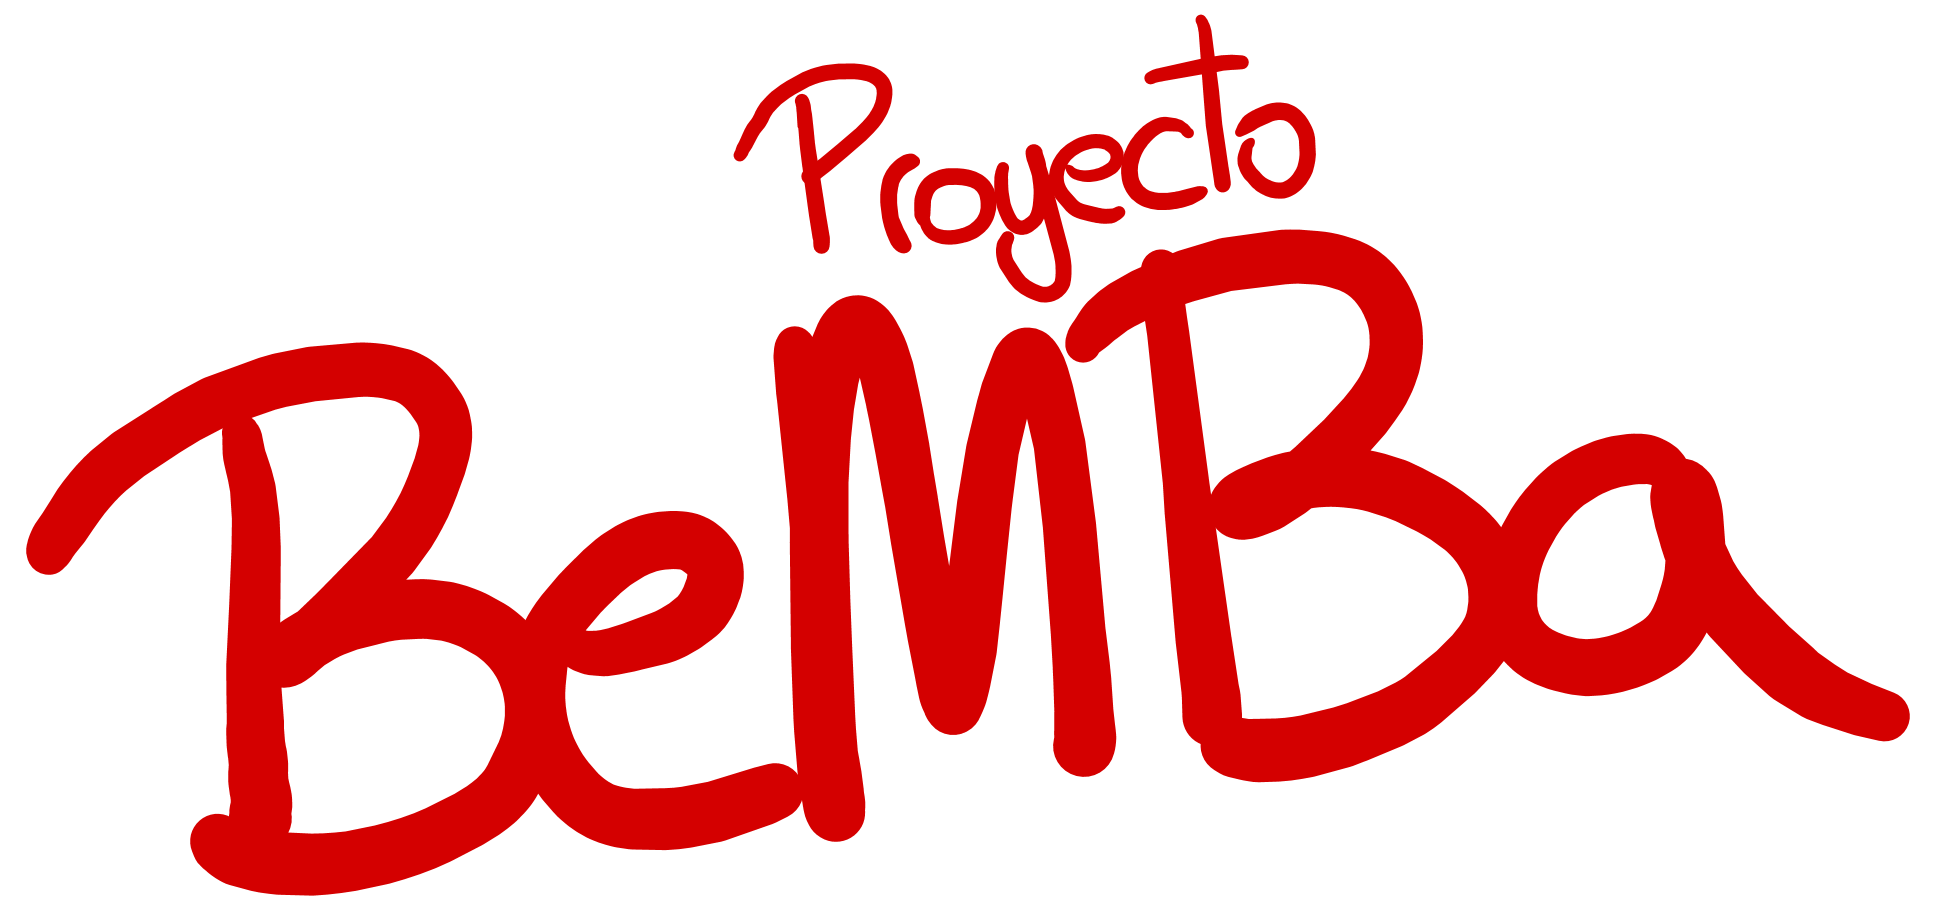 Proyecto BEMBA